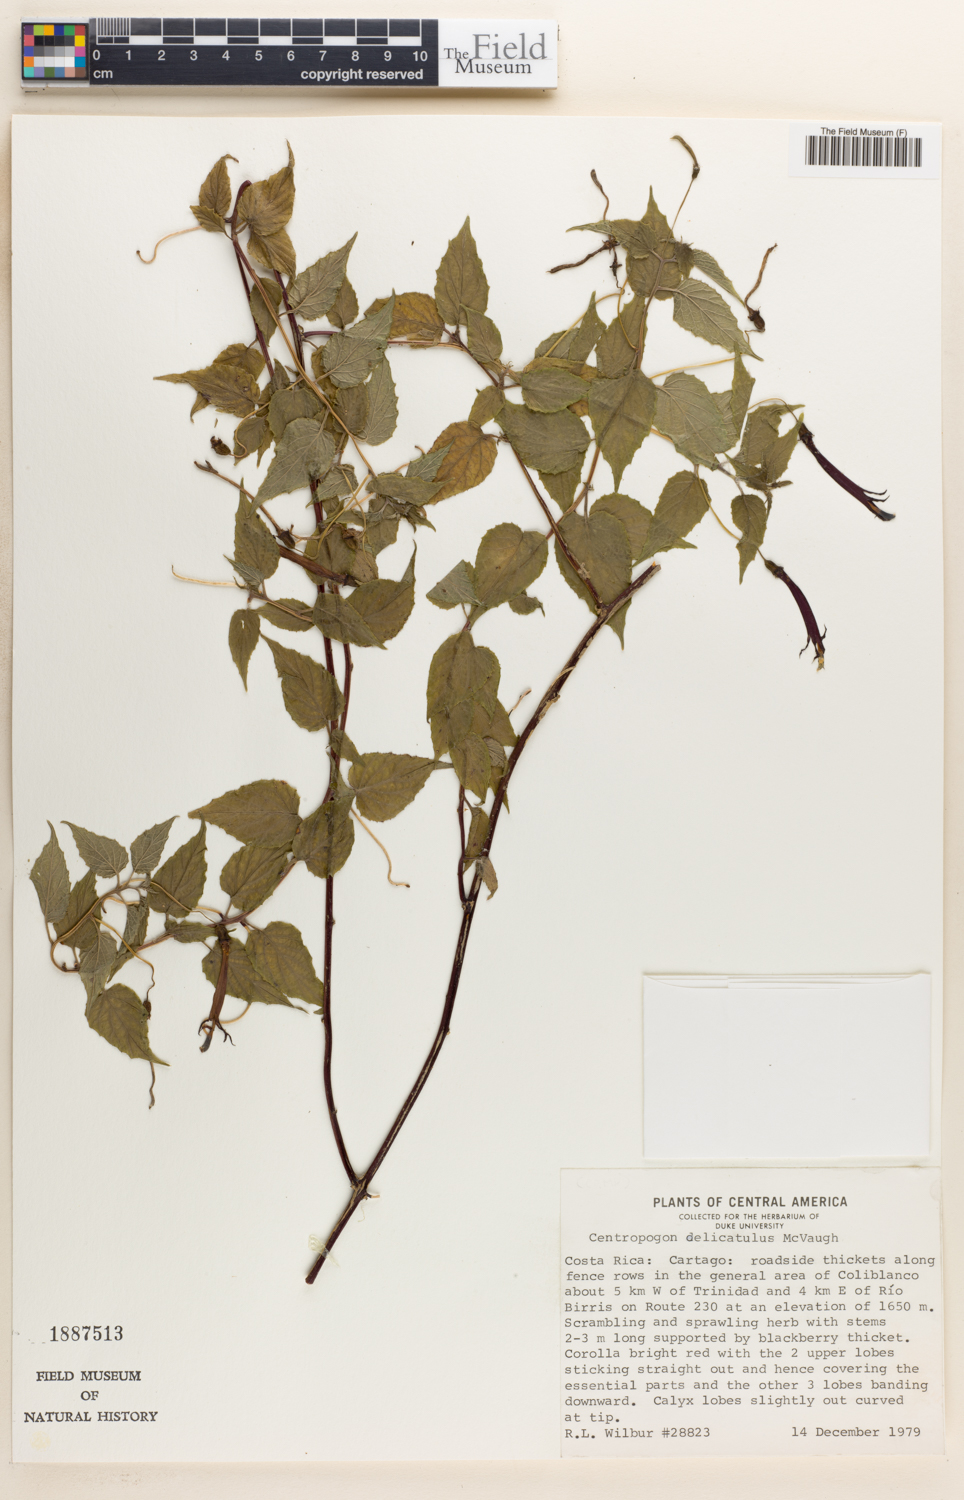 Centropogon delicatulus image